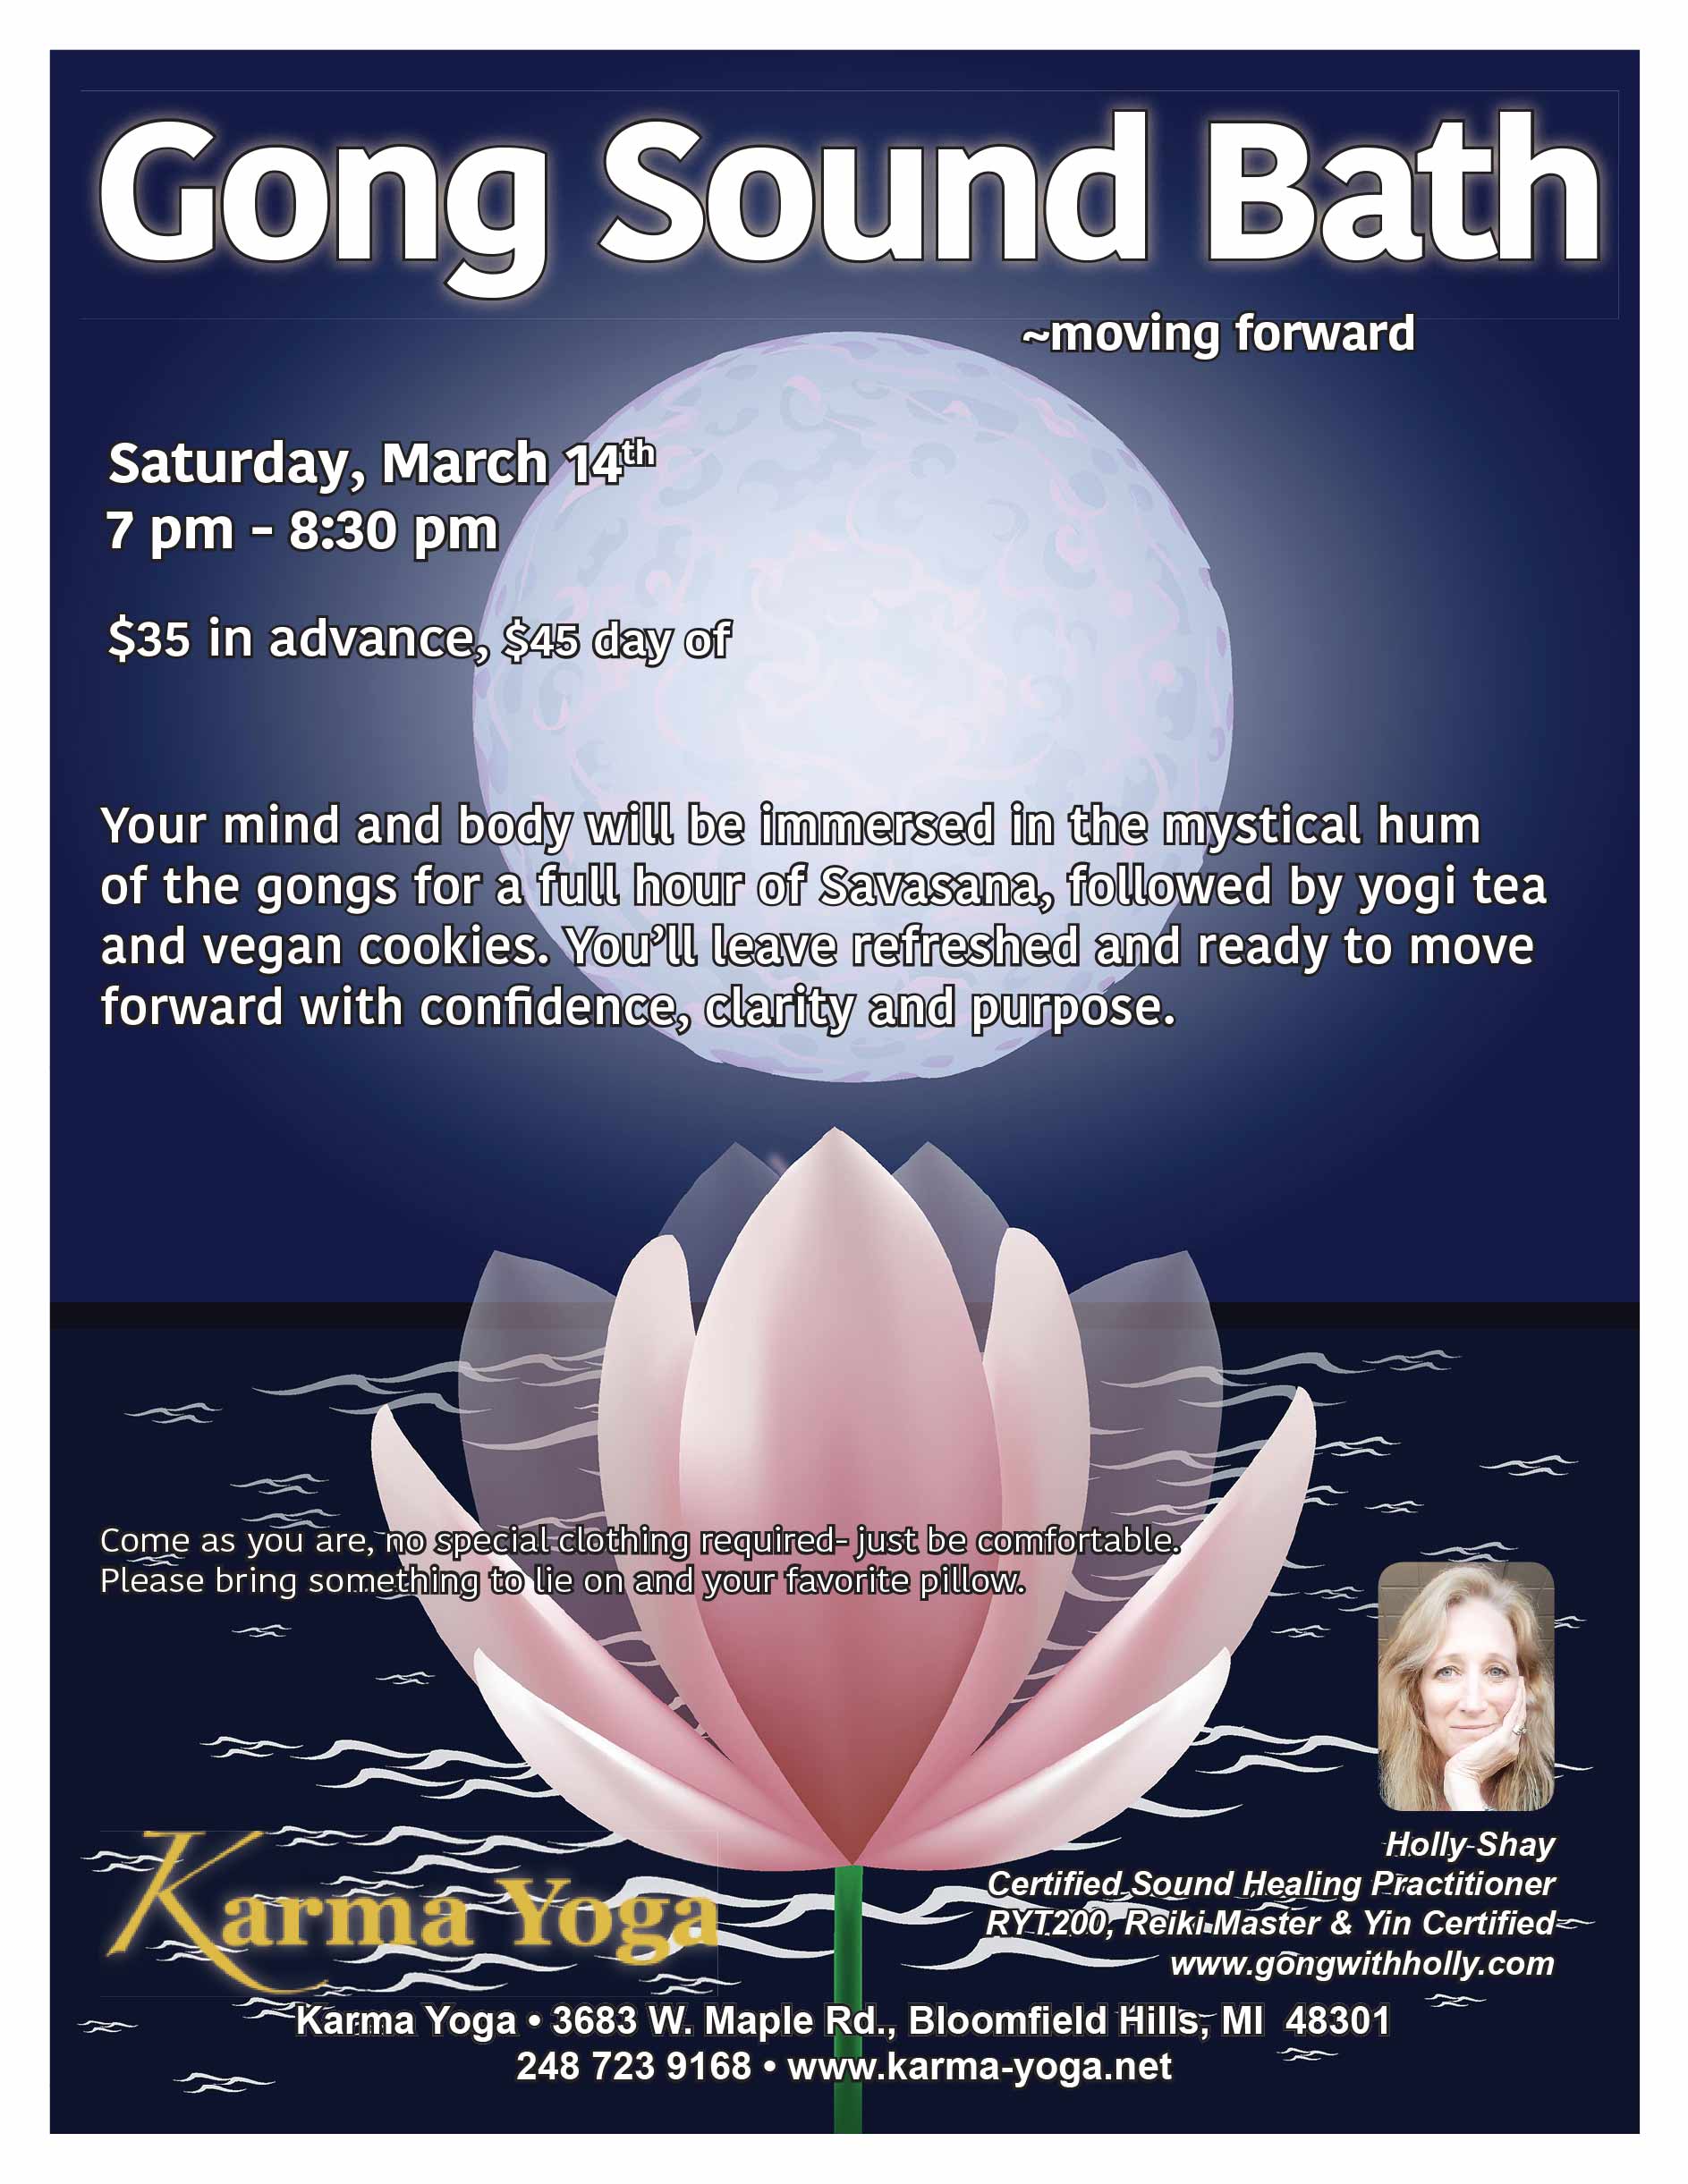 Gong Sound Bath March 14 Karma Yoga Bloomfield Hills